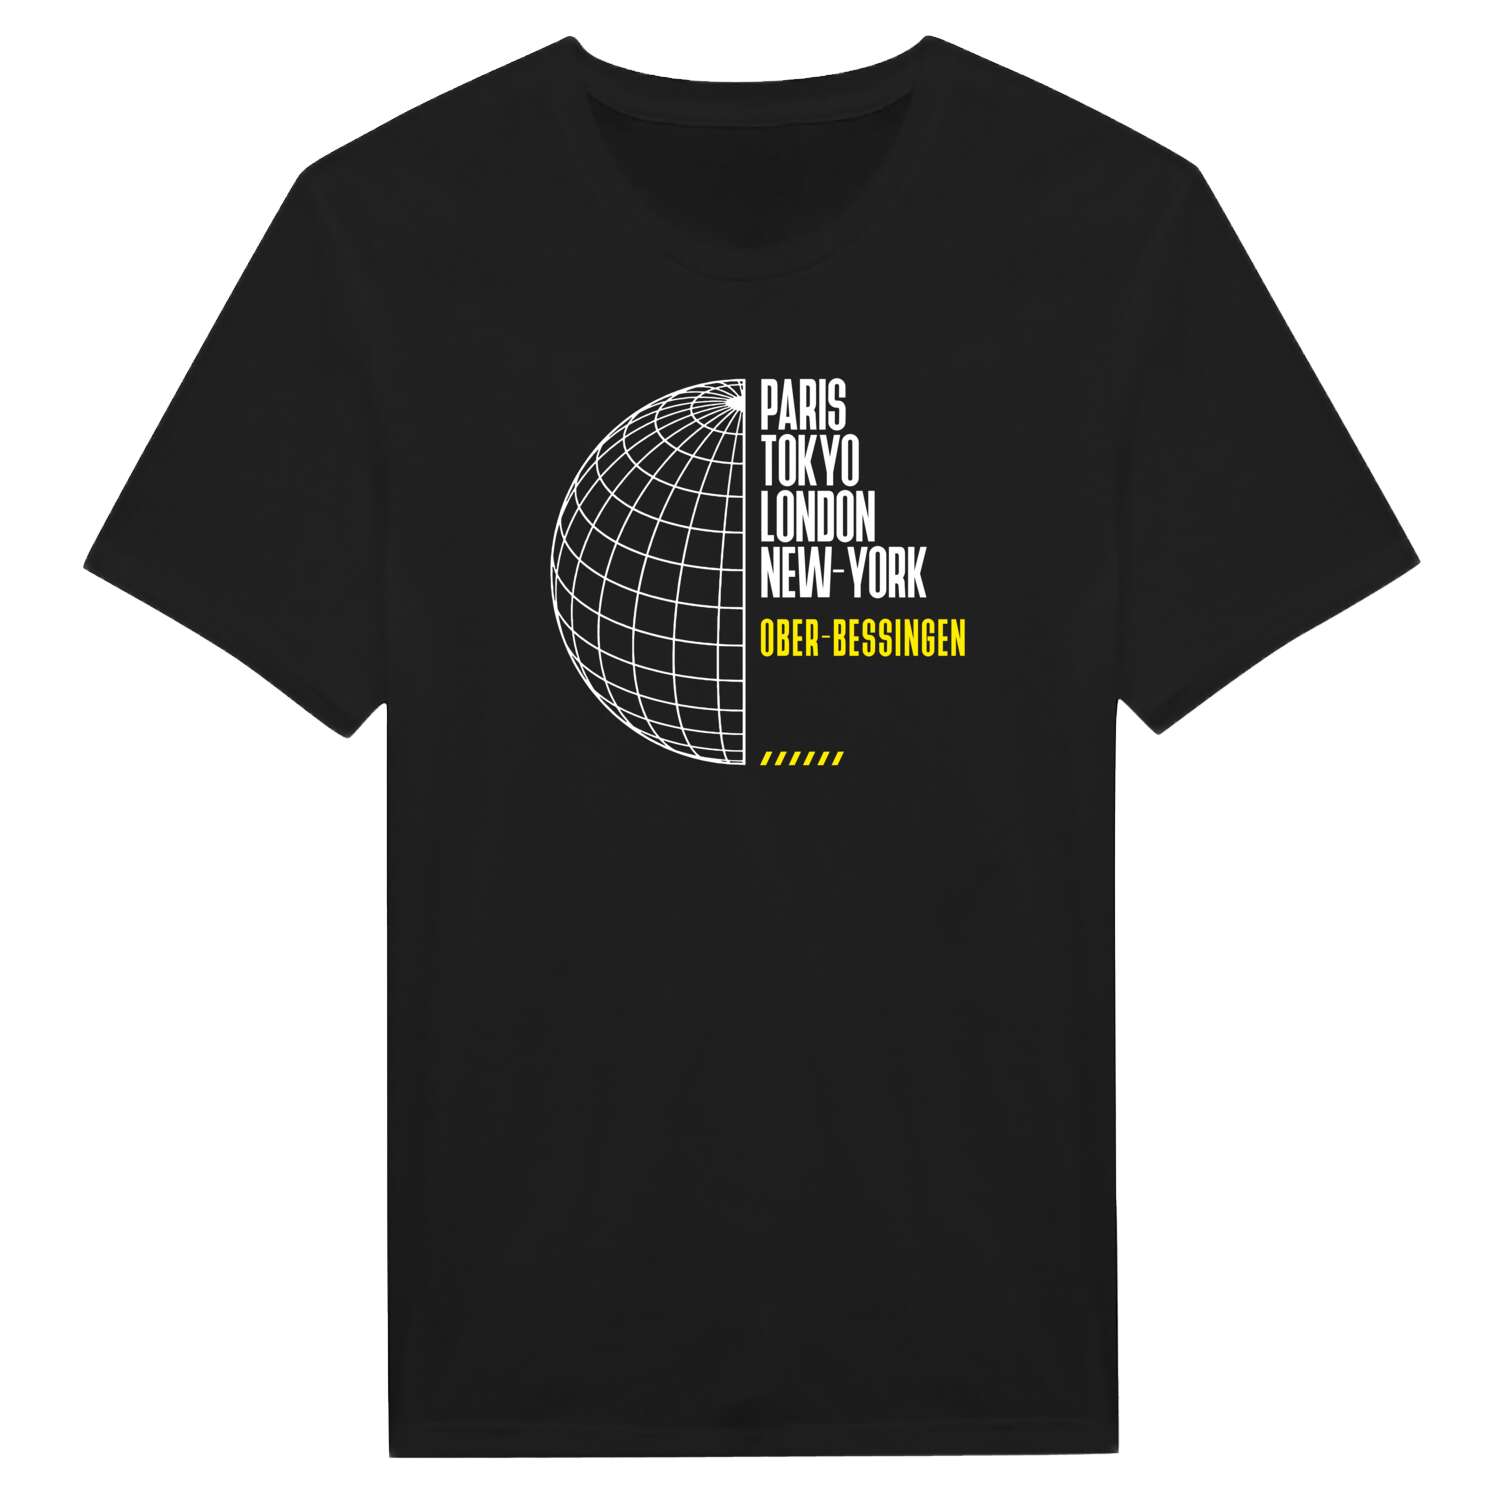 Ober-Bessingen T-Shirt »Paris Tokyo London«